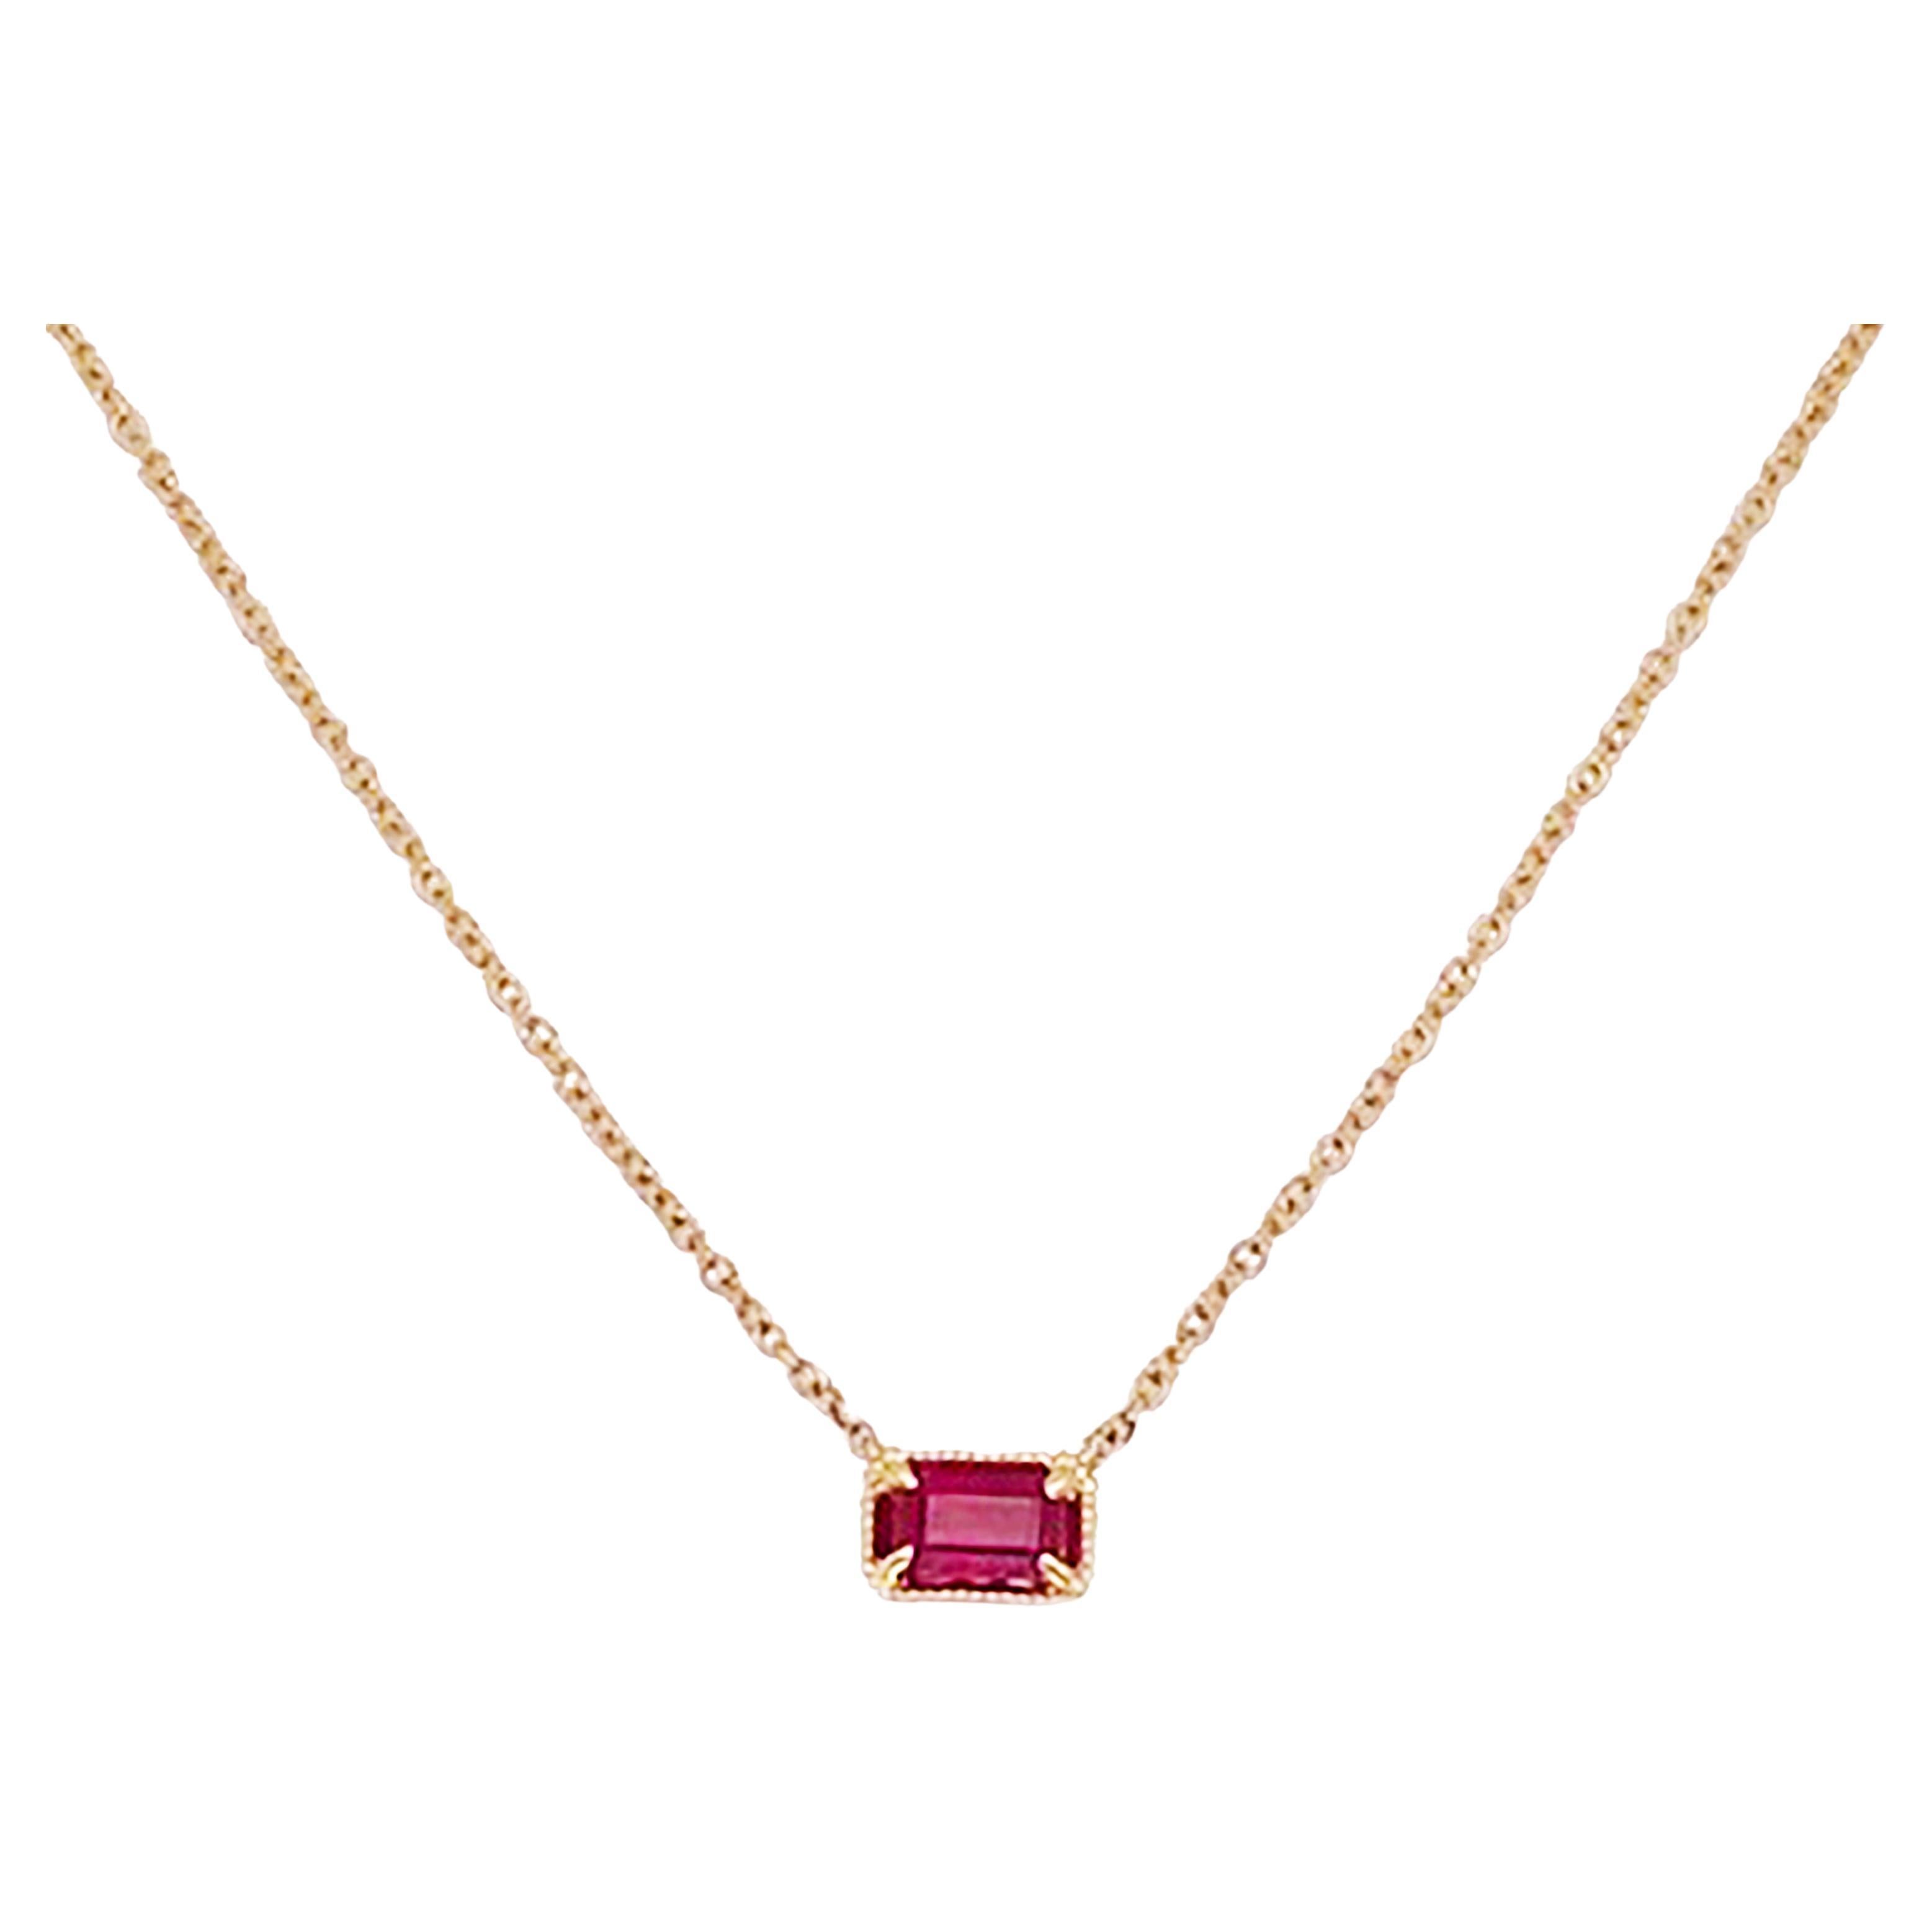 Collier pendentif juillet en or 14 carats avec rubis et pierres précieuses en rubis taille émeraude de 0,34 carat